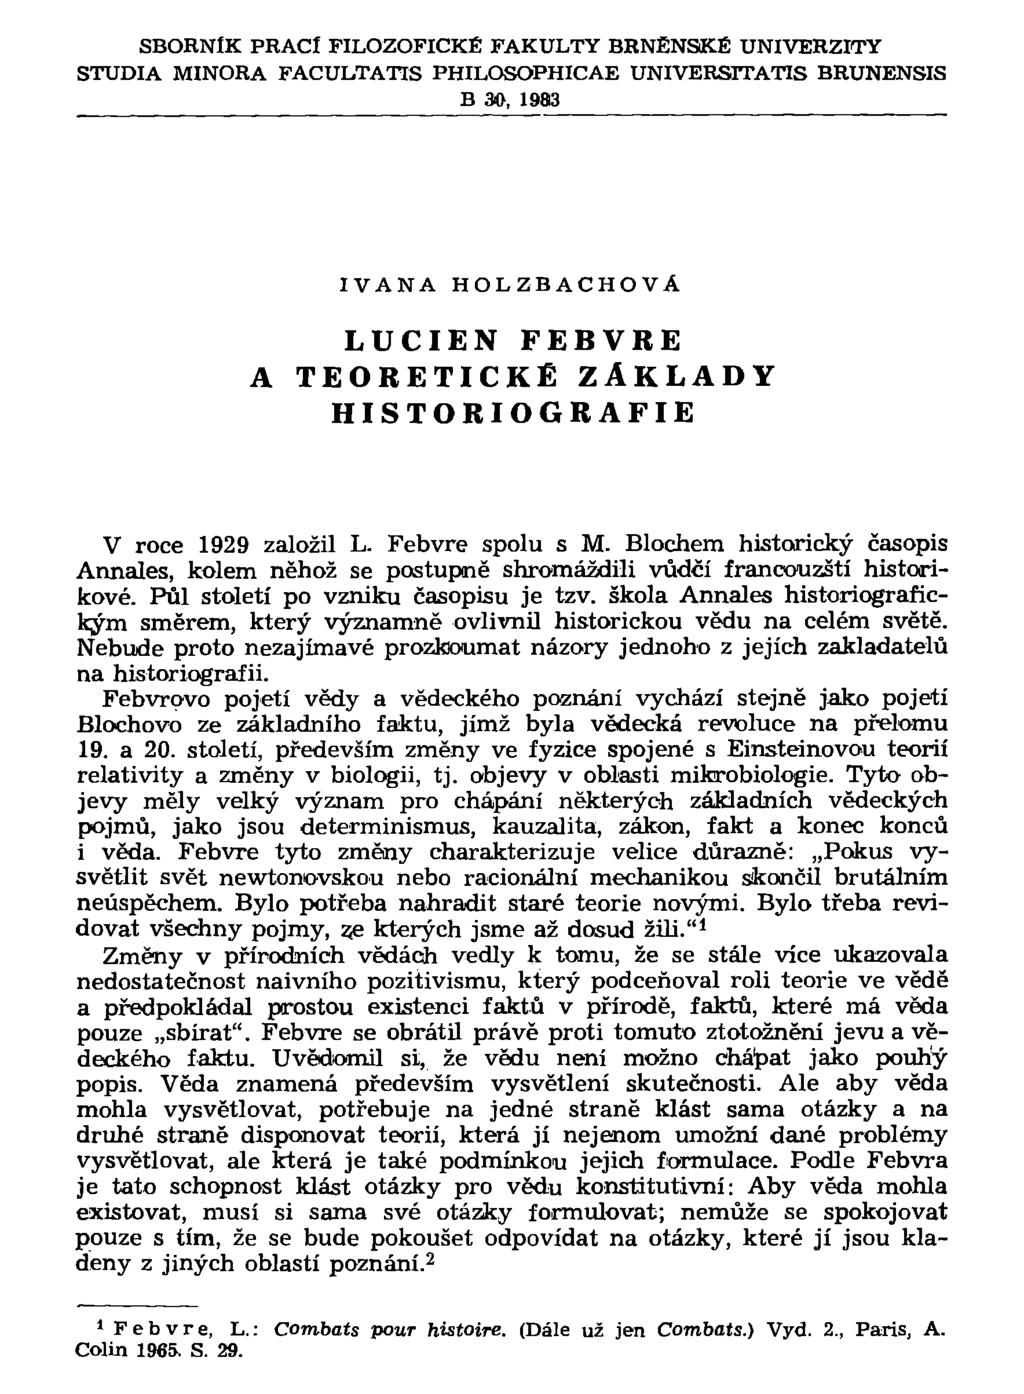 SBORNÍK PRACÍ FILOZOFICKÉ FAKULTY BRNĚNSKÉ UNIVERZITY STUDIA MINORA FACULTATIS PHILOSOPHICAE UNIVERSTTATIS BRUNENSIS B 30, 1983 IVANA HOLZBACHOVÁ LUCIEN FEBVRE TEORETICKÉ ZÁKLADY HISTORIOGRAFIE V